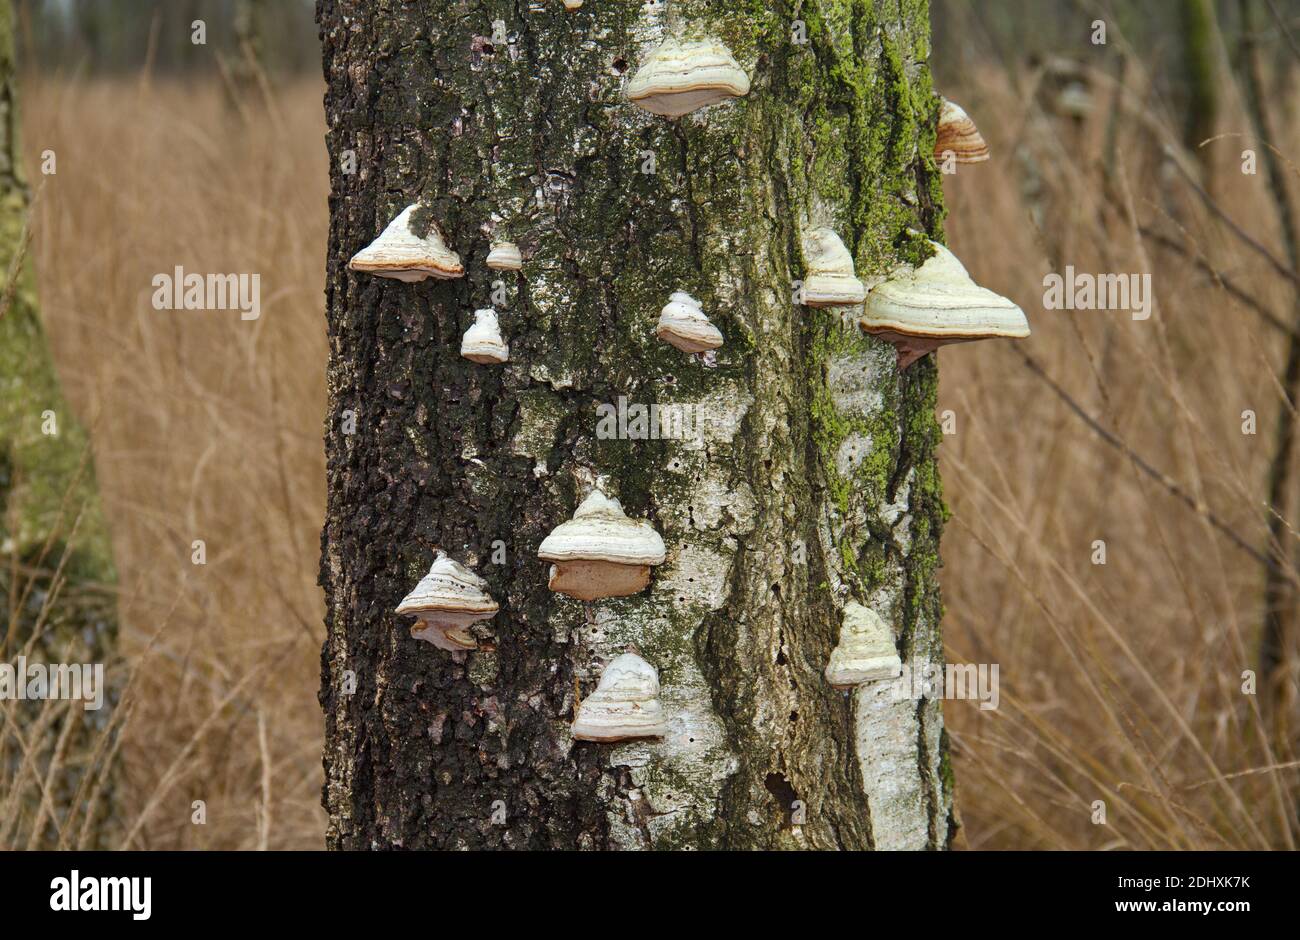 Lotti dei funghi della staffa del Beeswax che crescono su un morto in piedi Betulla Foto Stock